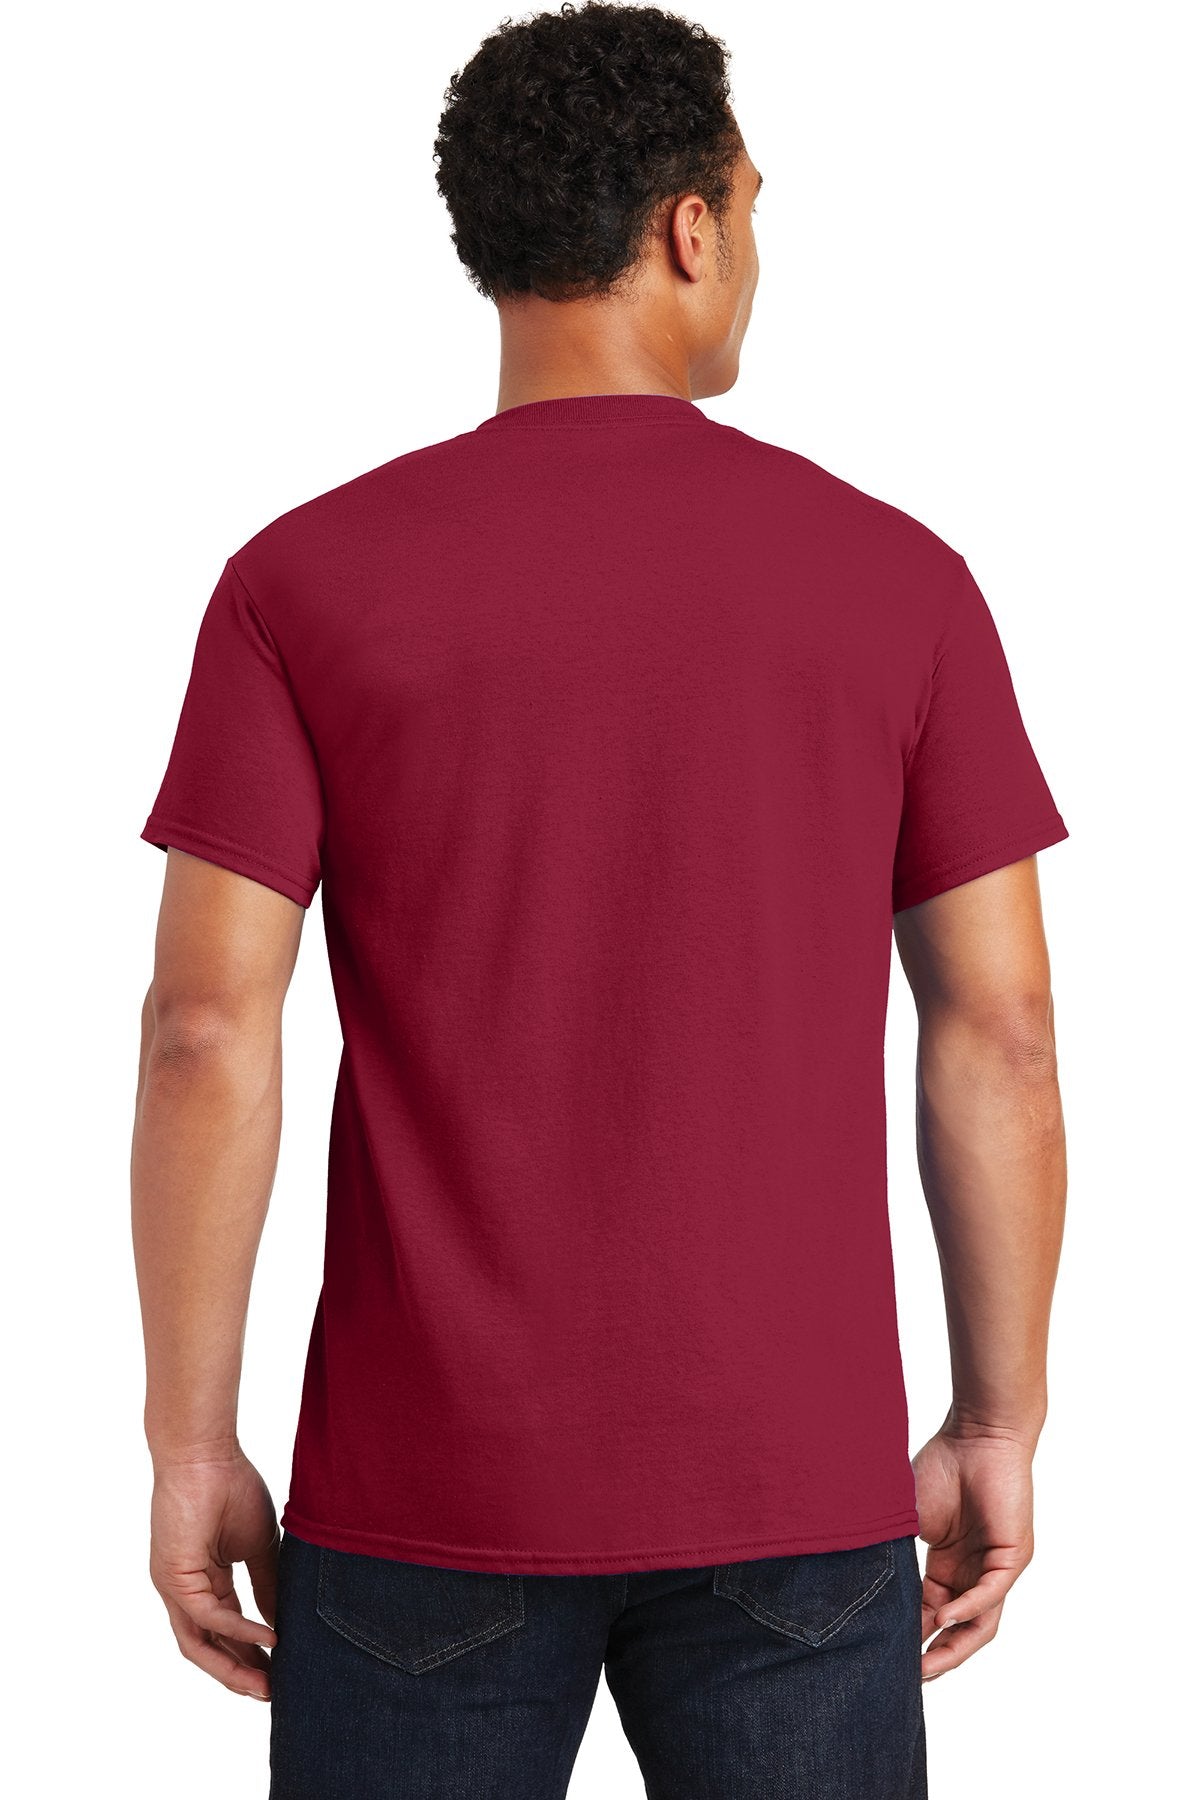 gildan ultra cotton t shirt 2000 cardinal red